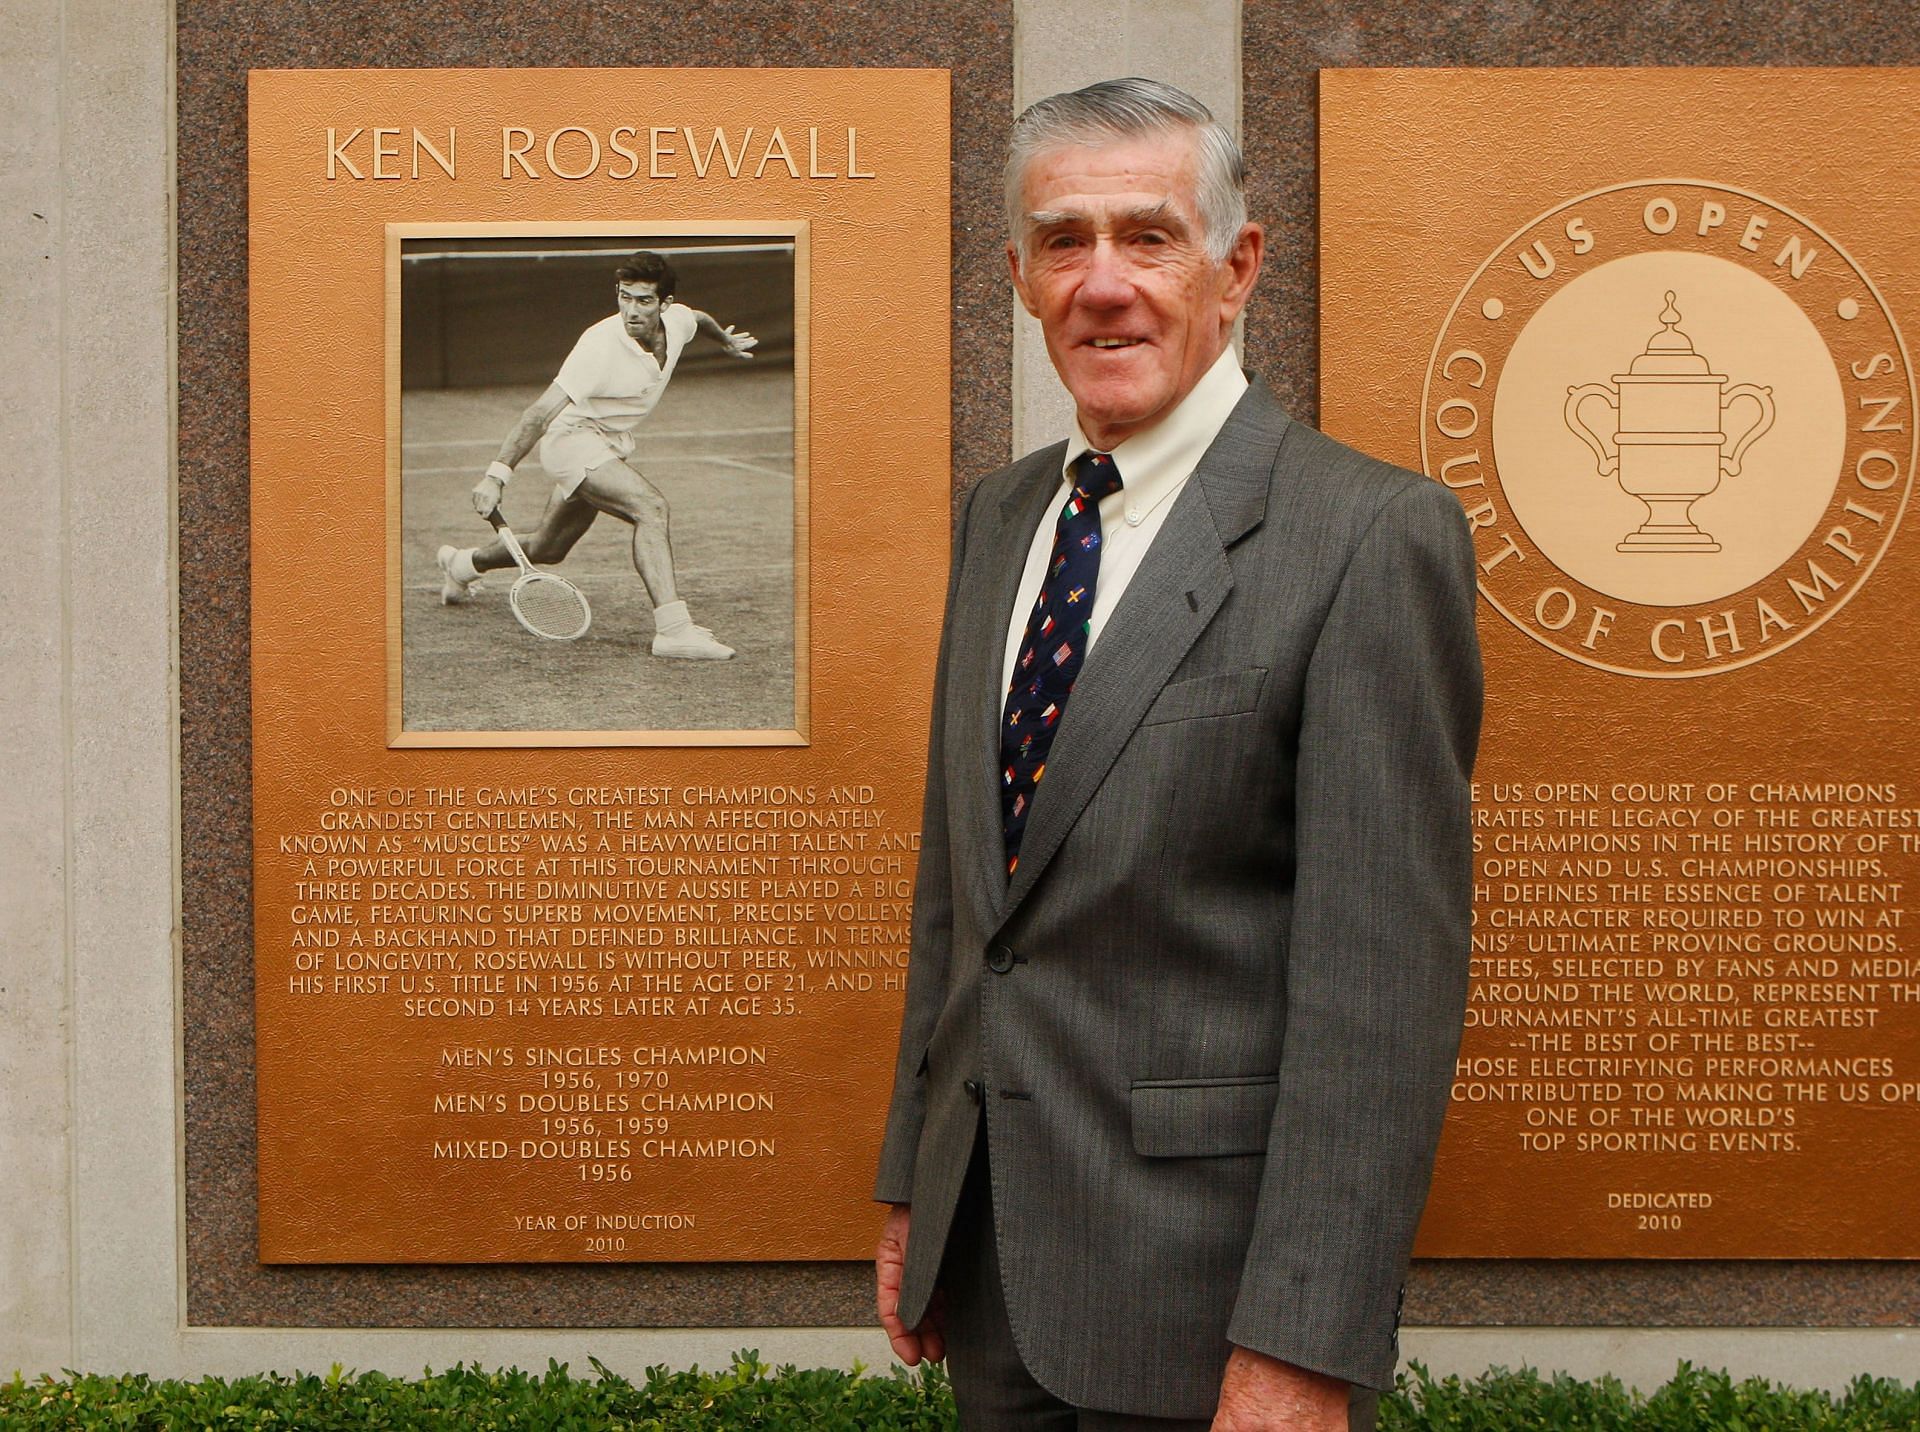 Ken Rosewall is the oldest US Open winner in the Open Era.